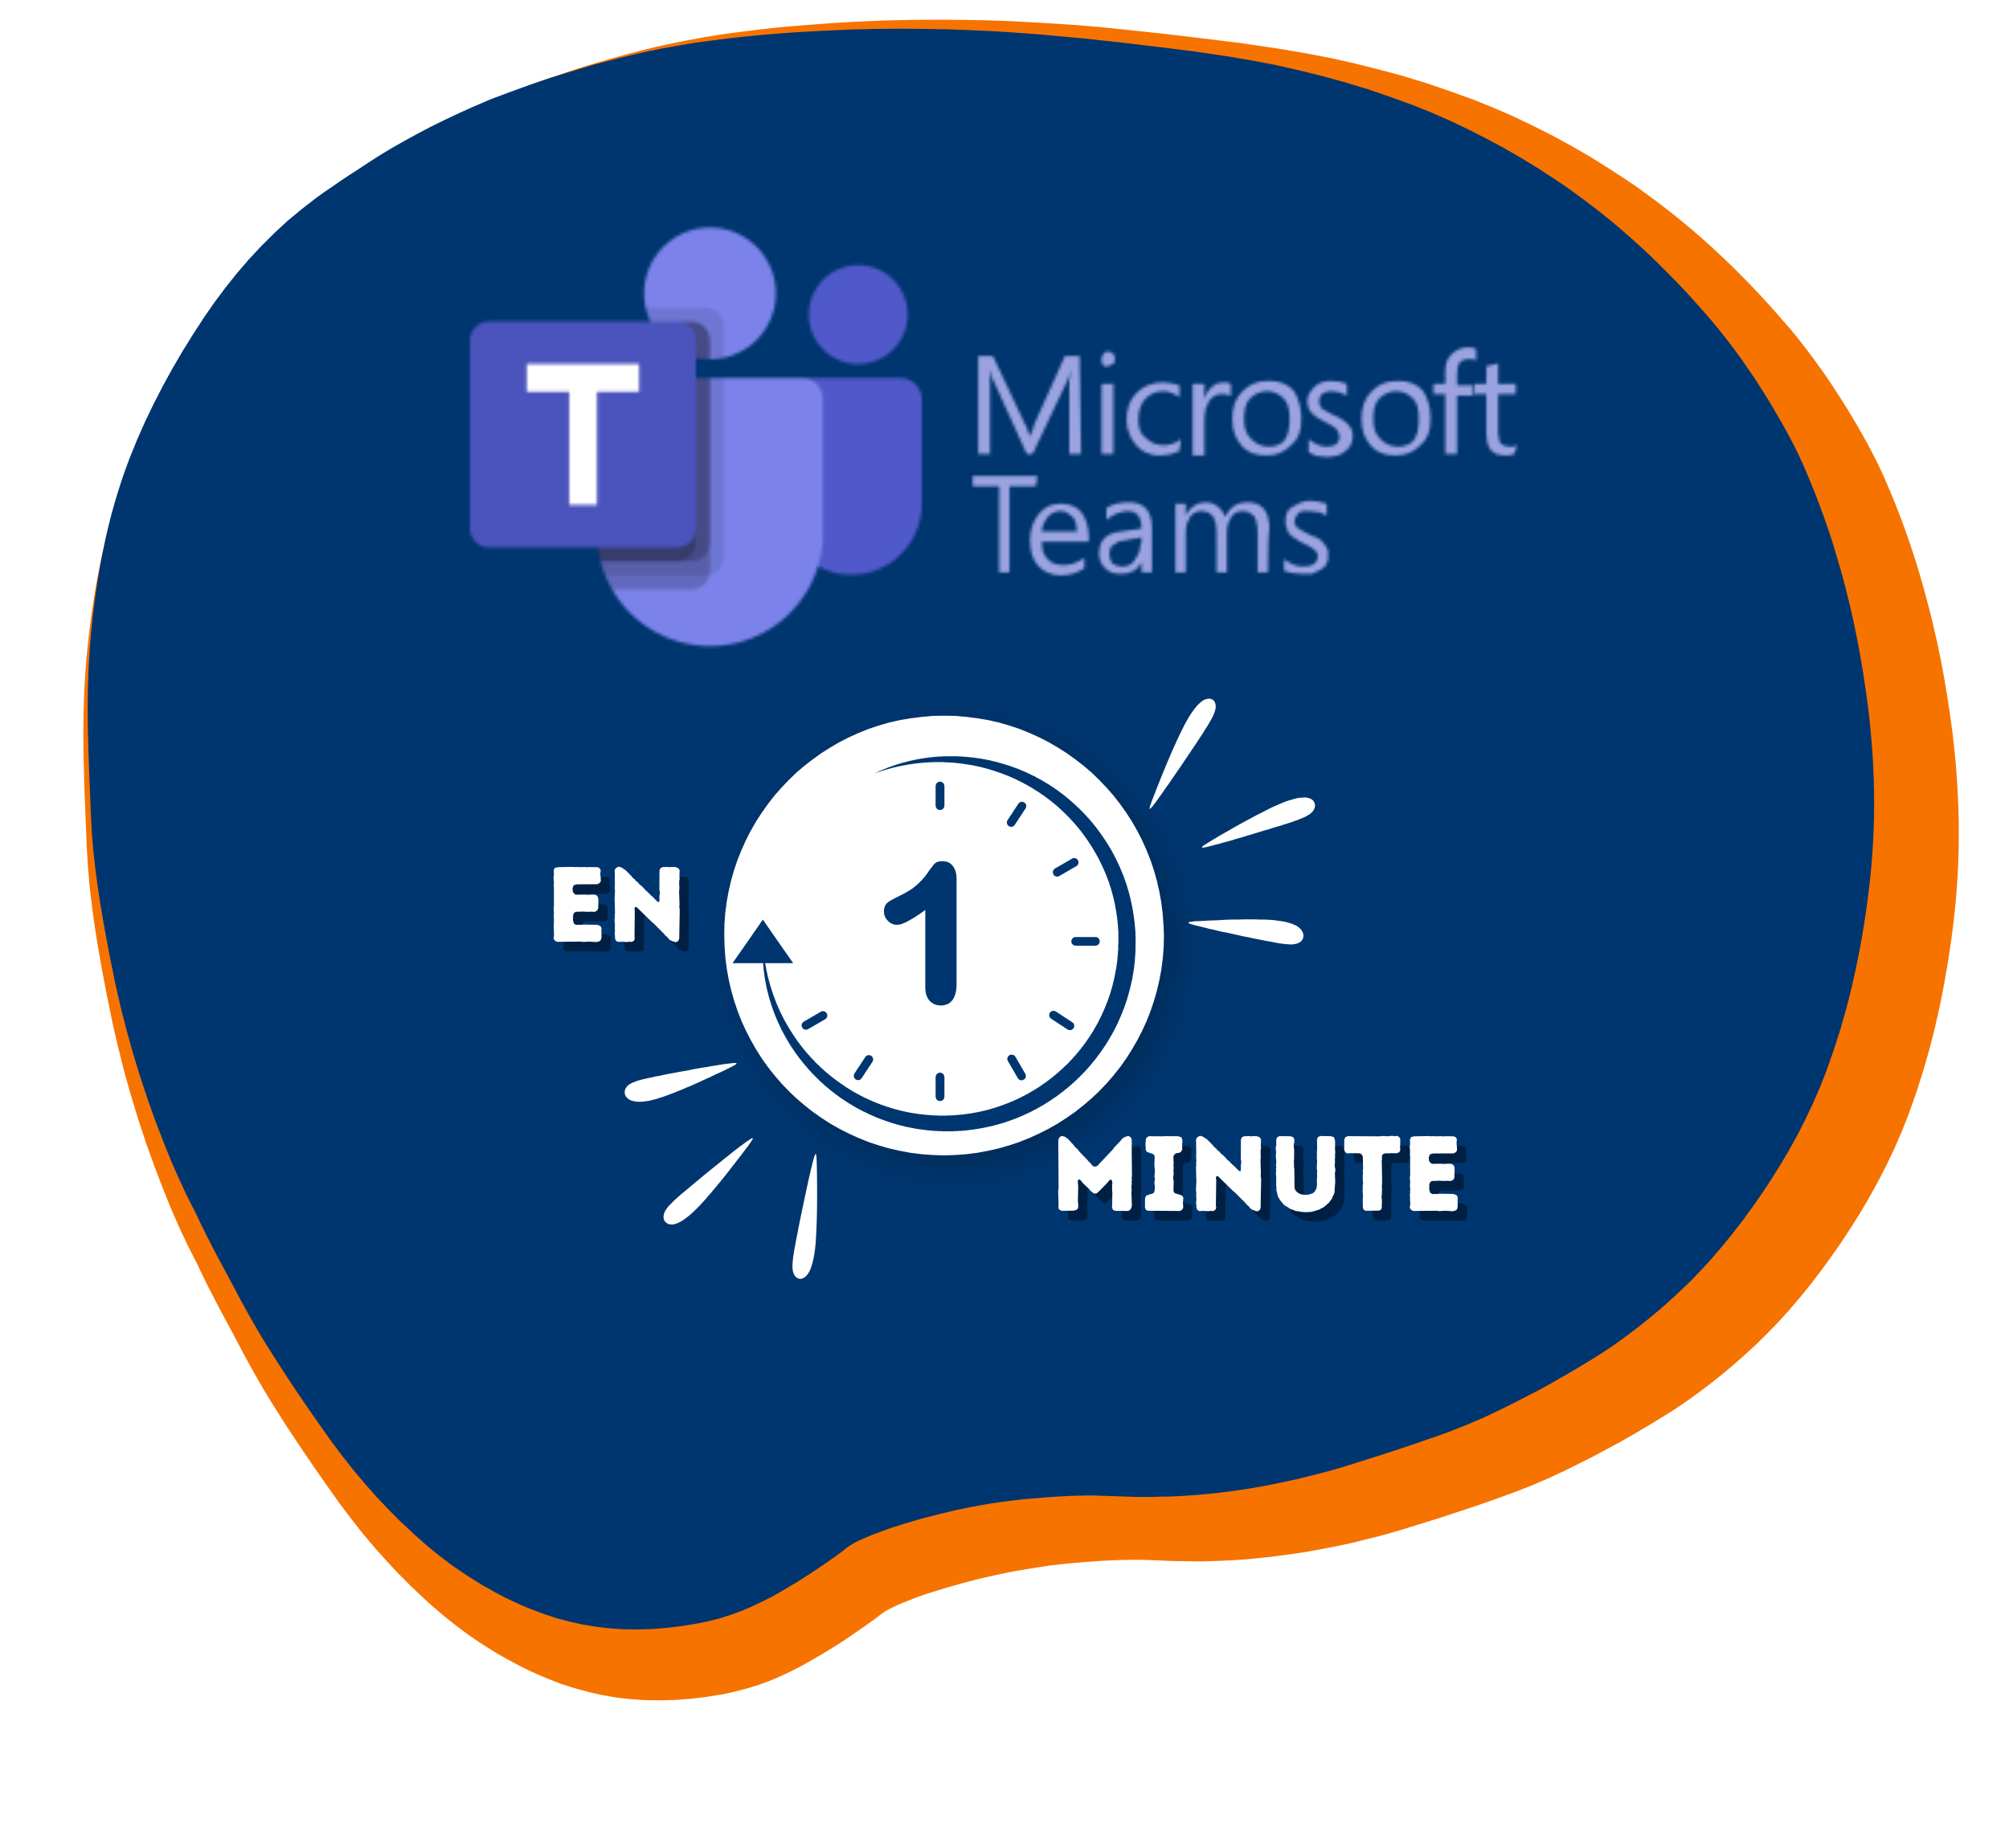 Microsoft Teams en 1 minute